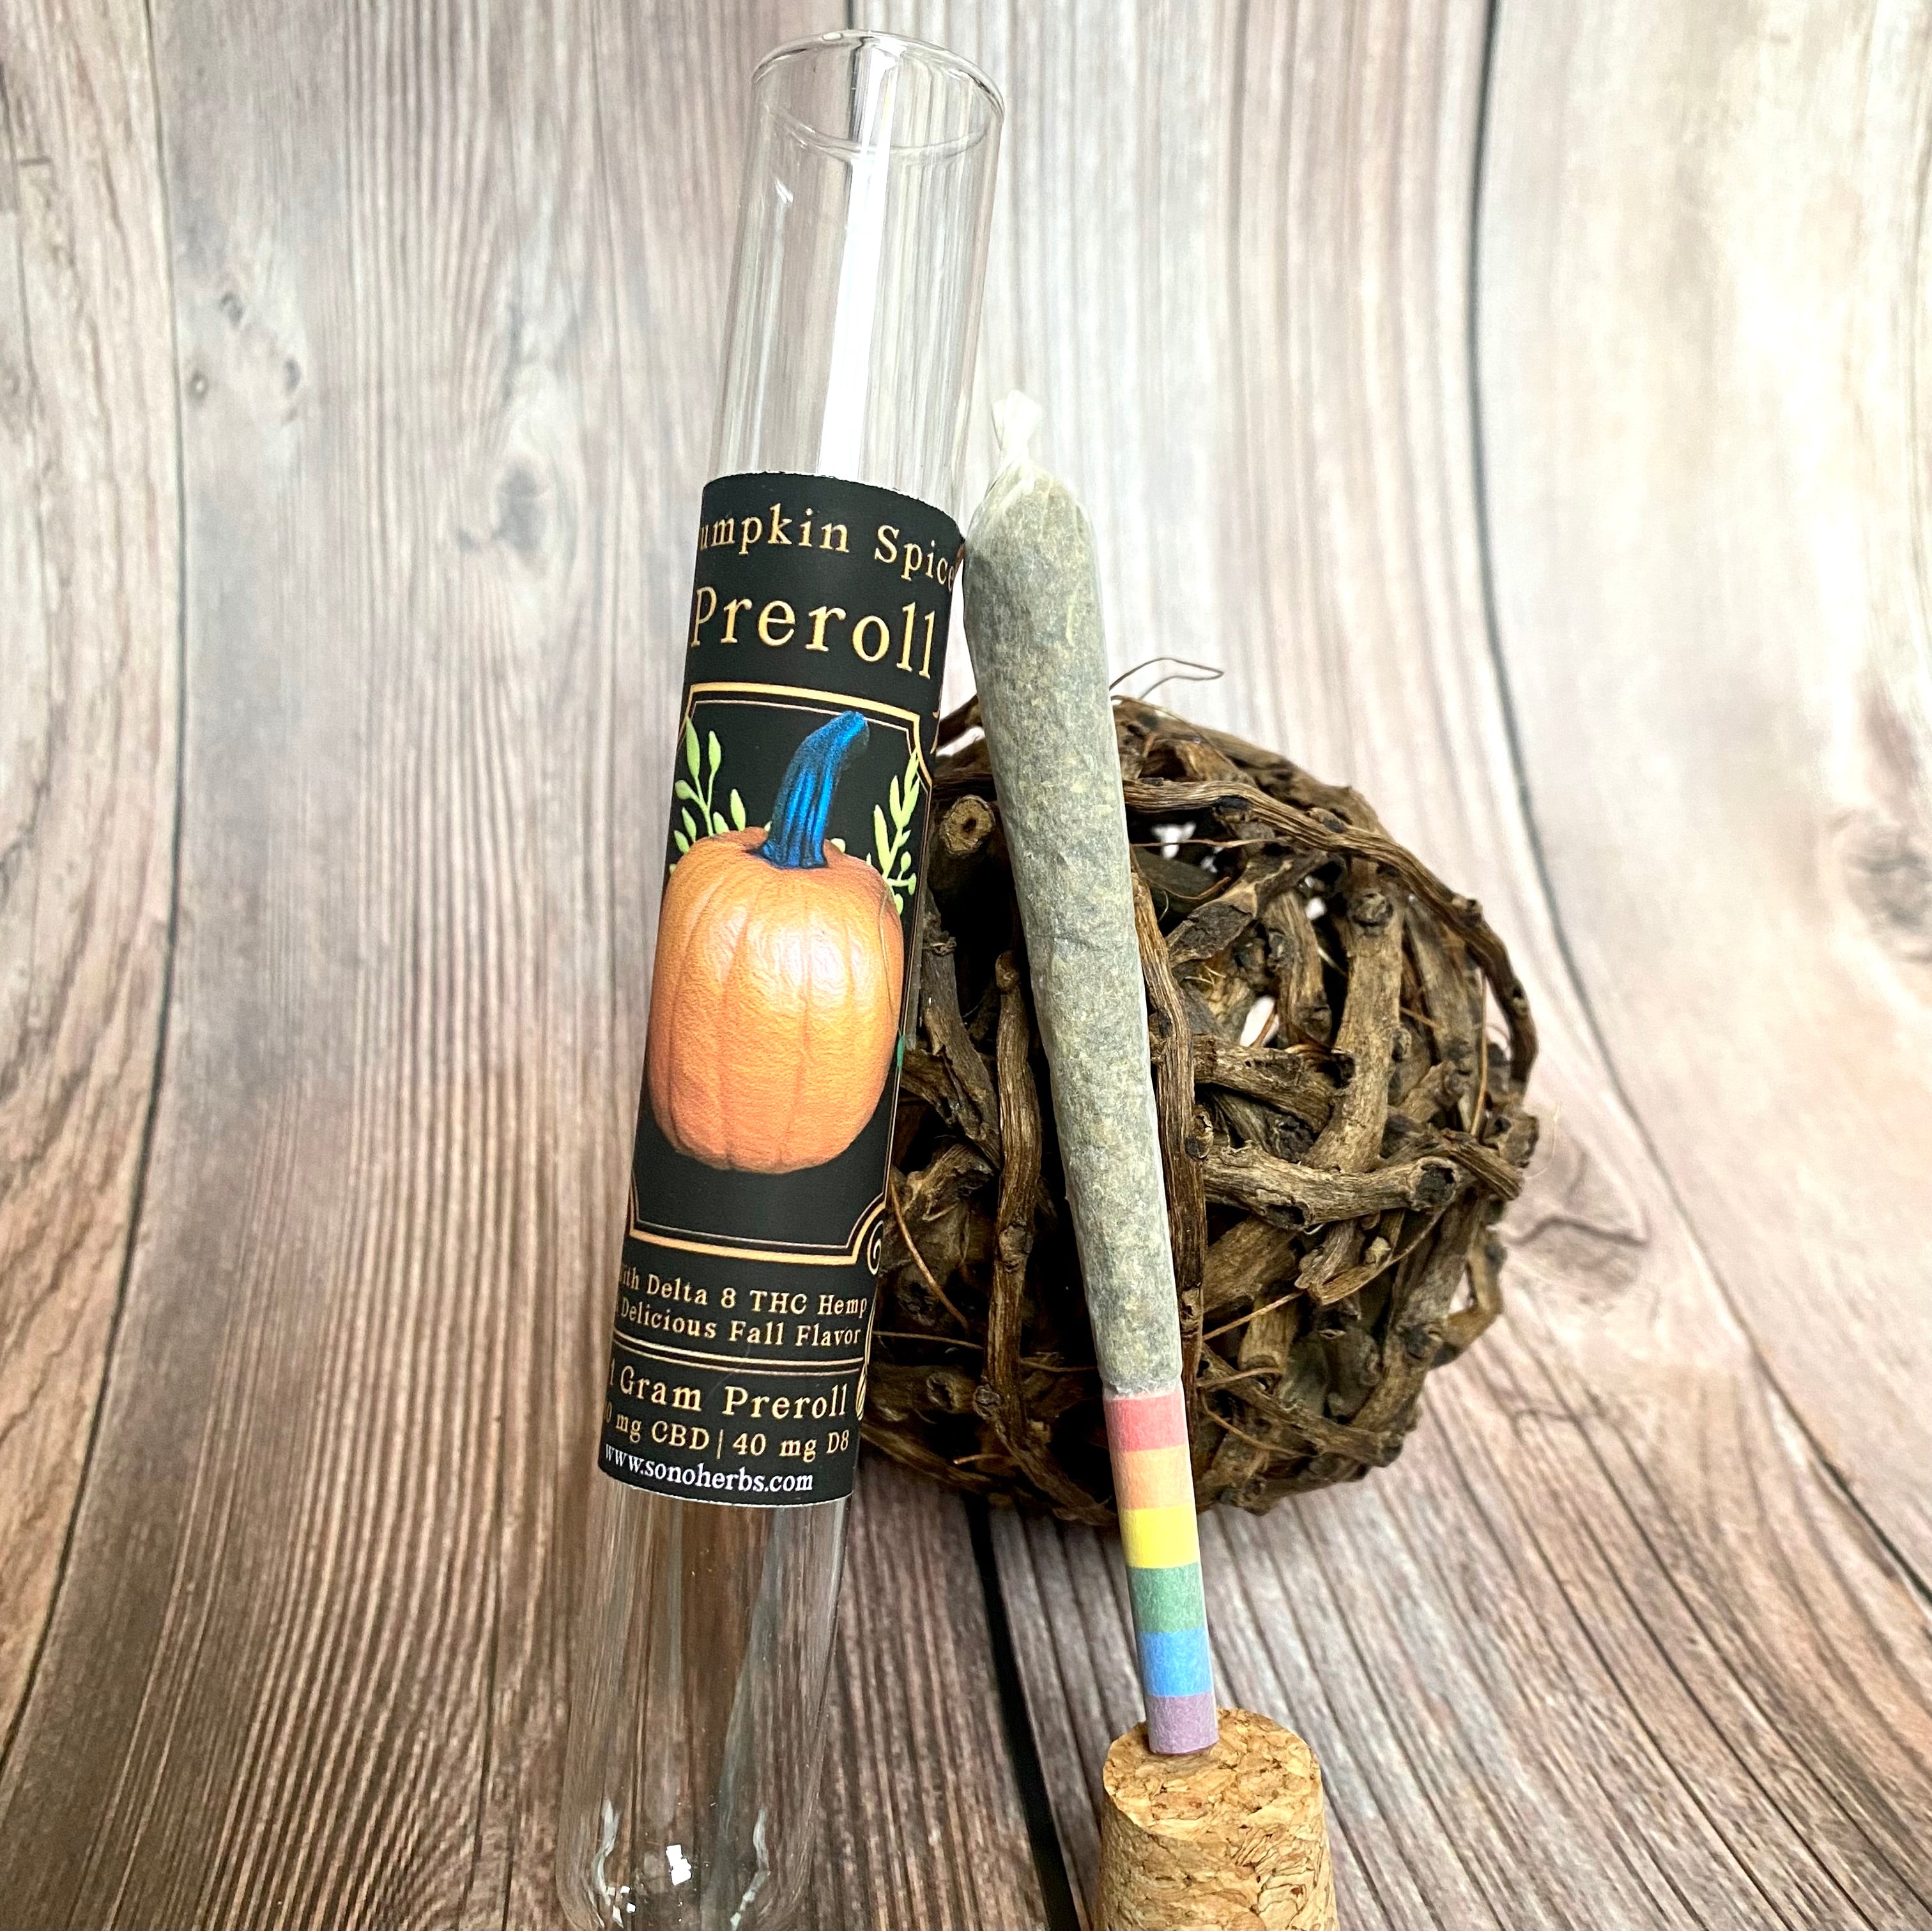 Pumpkin Spice Preroll | Delta 8 THC Hemp | Rainbow Filter | Single or 4-Pack!